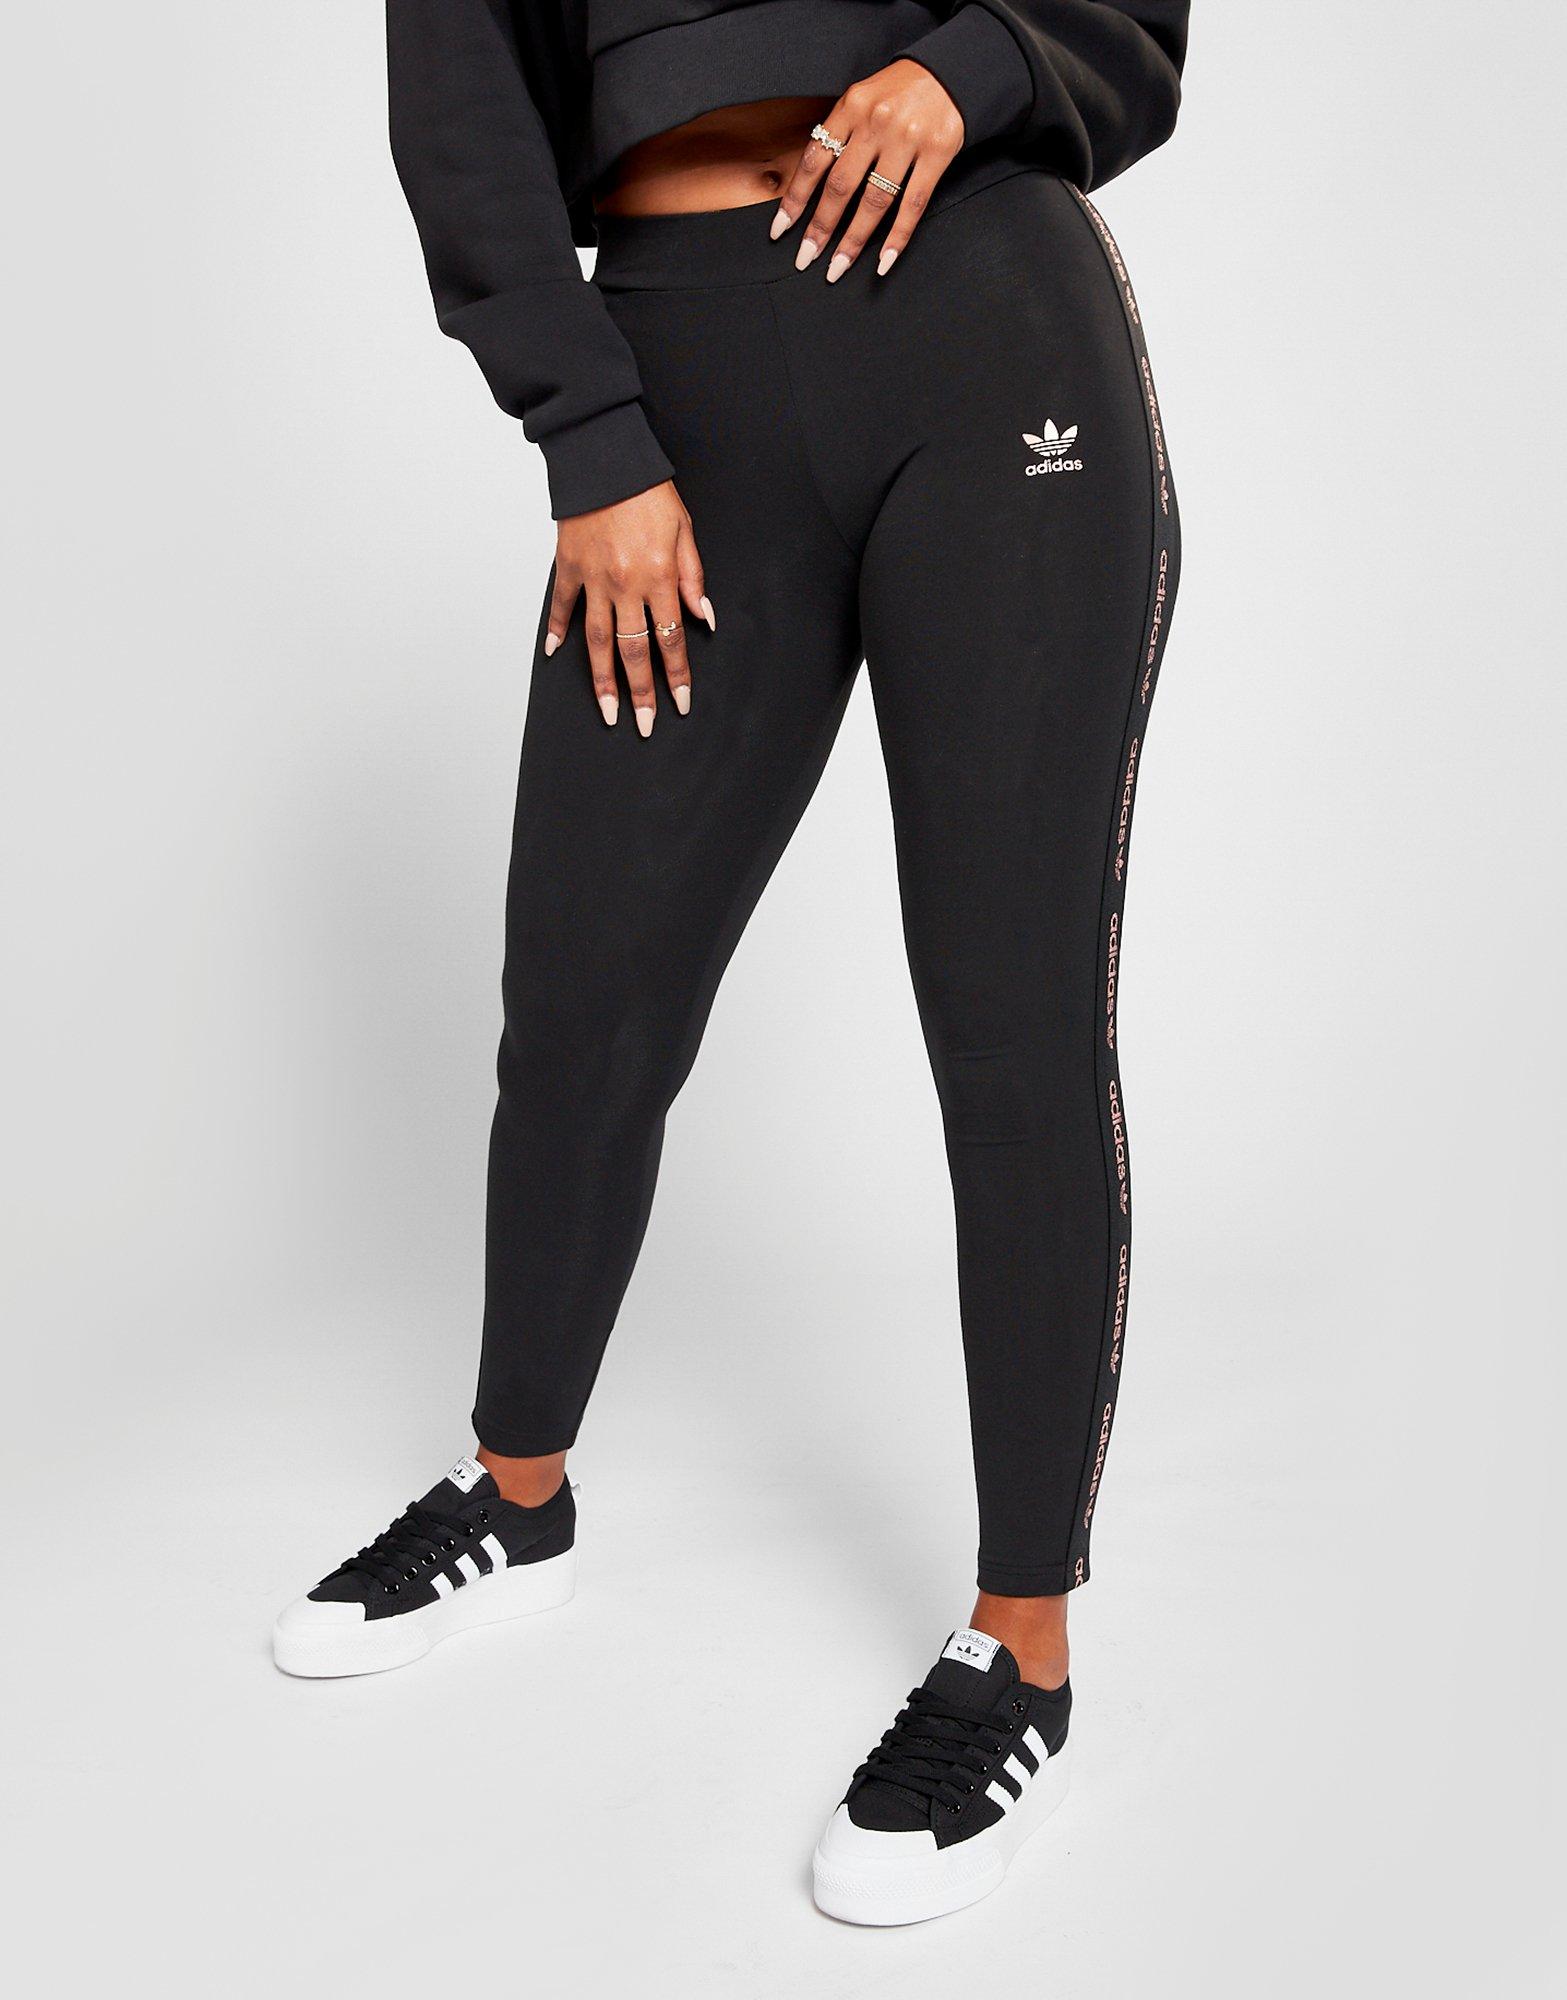 adidas black trefoil taped leggings